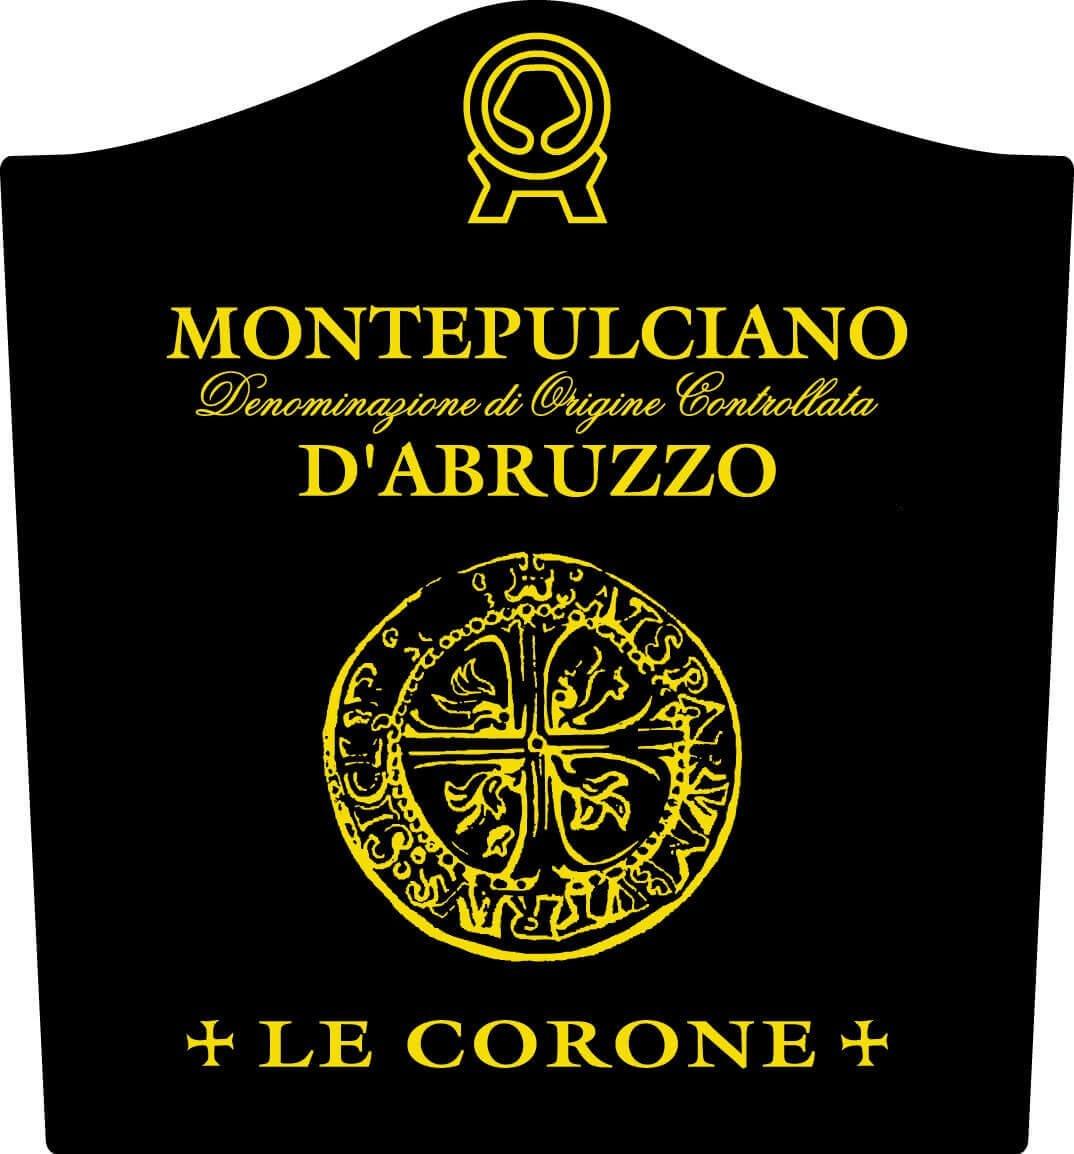 Cantina Colonnella 2018 Montepulciano D'Abruzzo, Le Corone